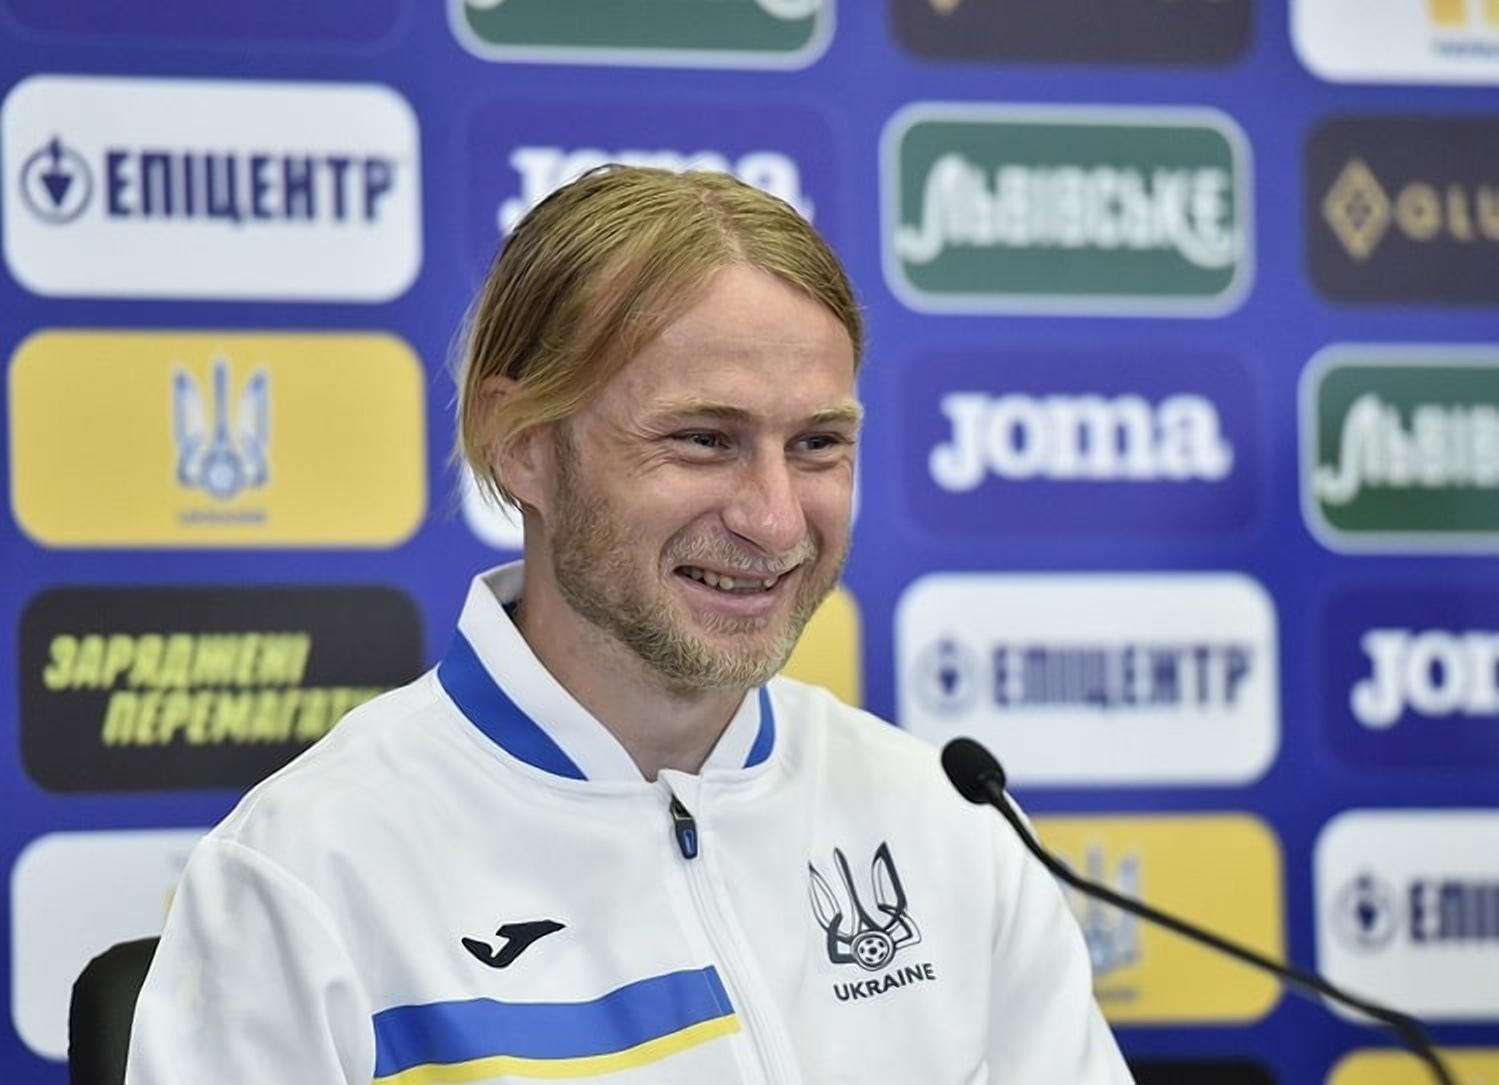 Безус має проблеми, – тренер Гента Ванхазебрук дуже критично оцінює гру українця - Збірна